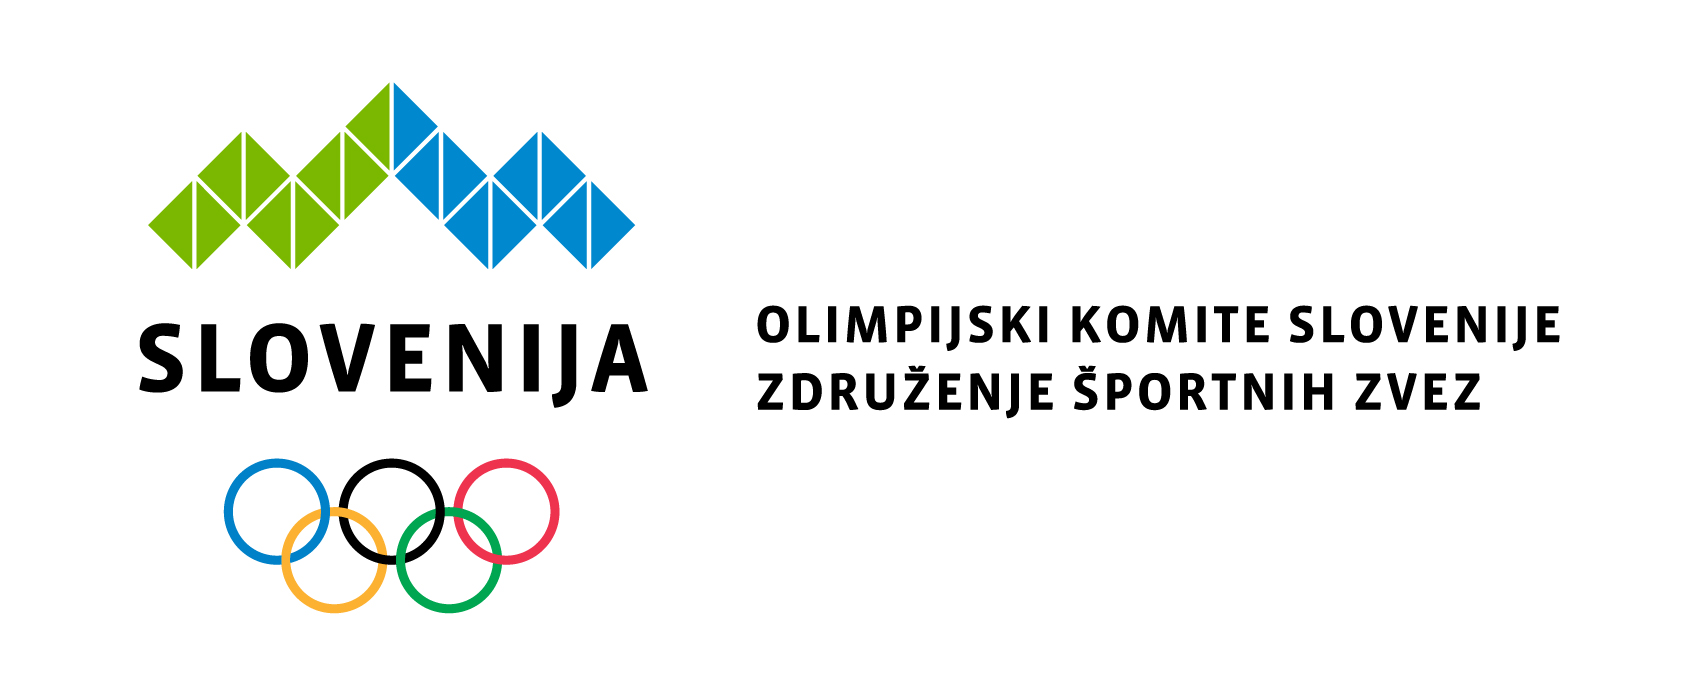 Seja IO OKS v Ljubljani